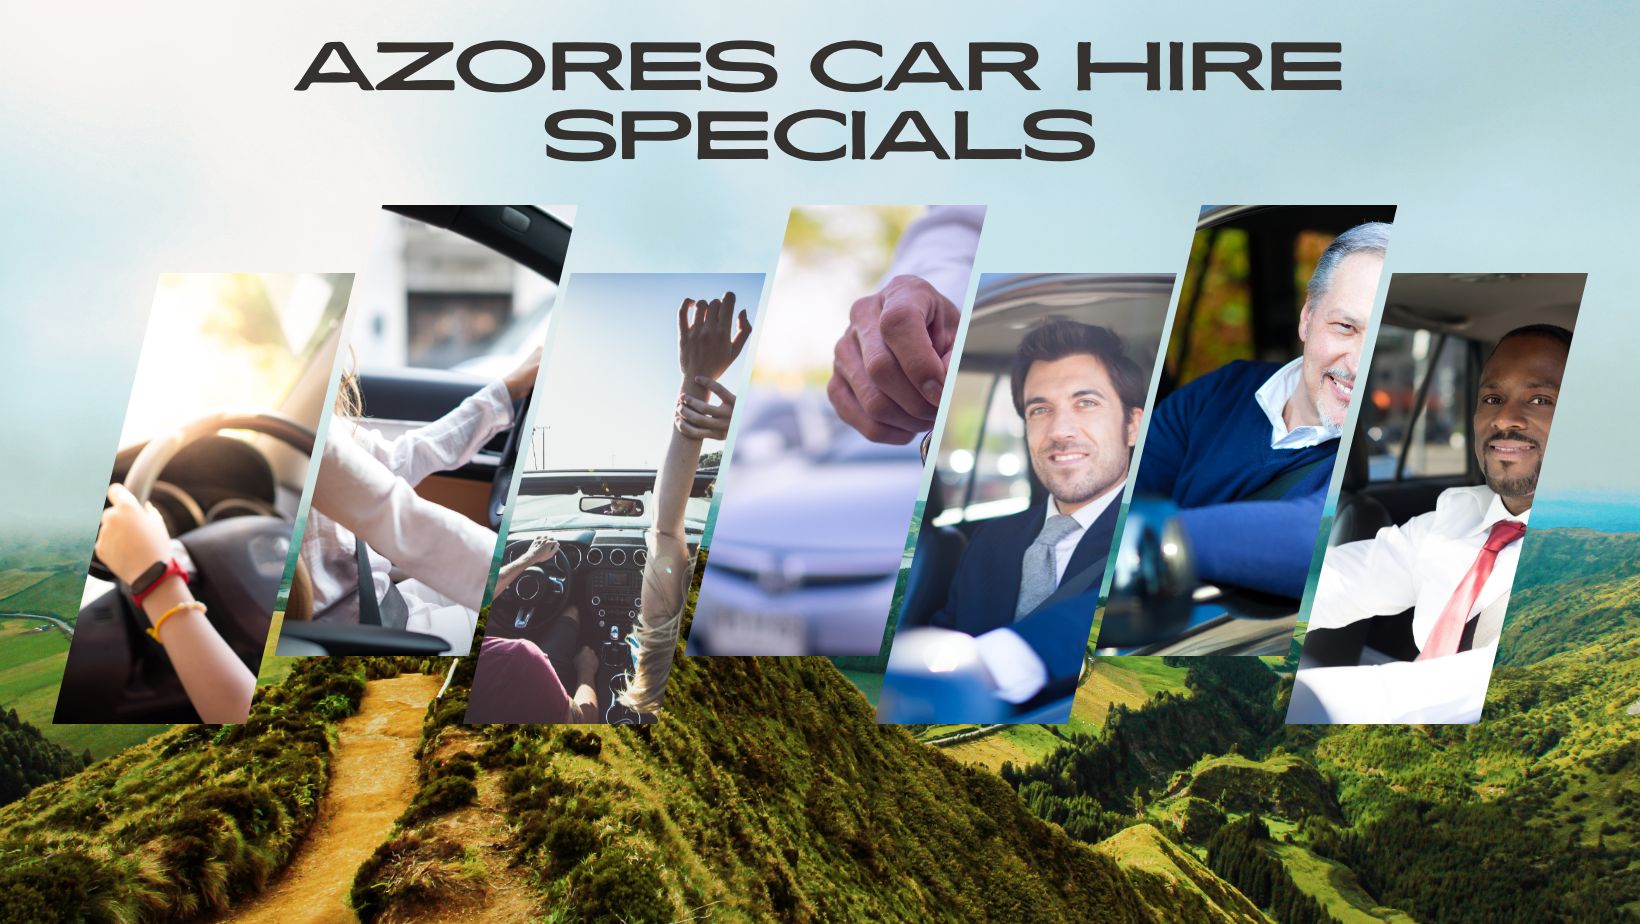 Azores car hire specials